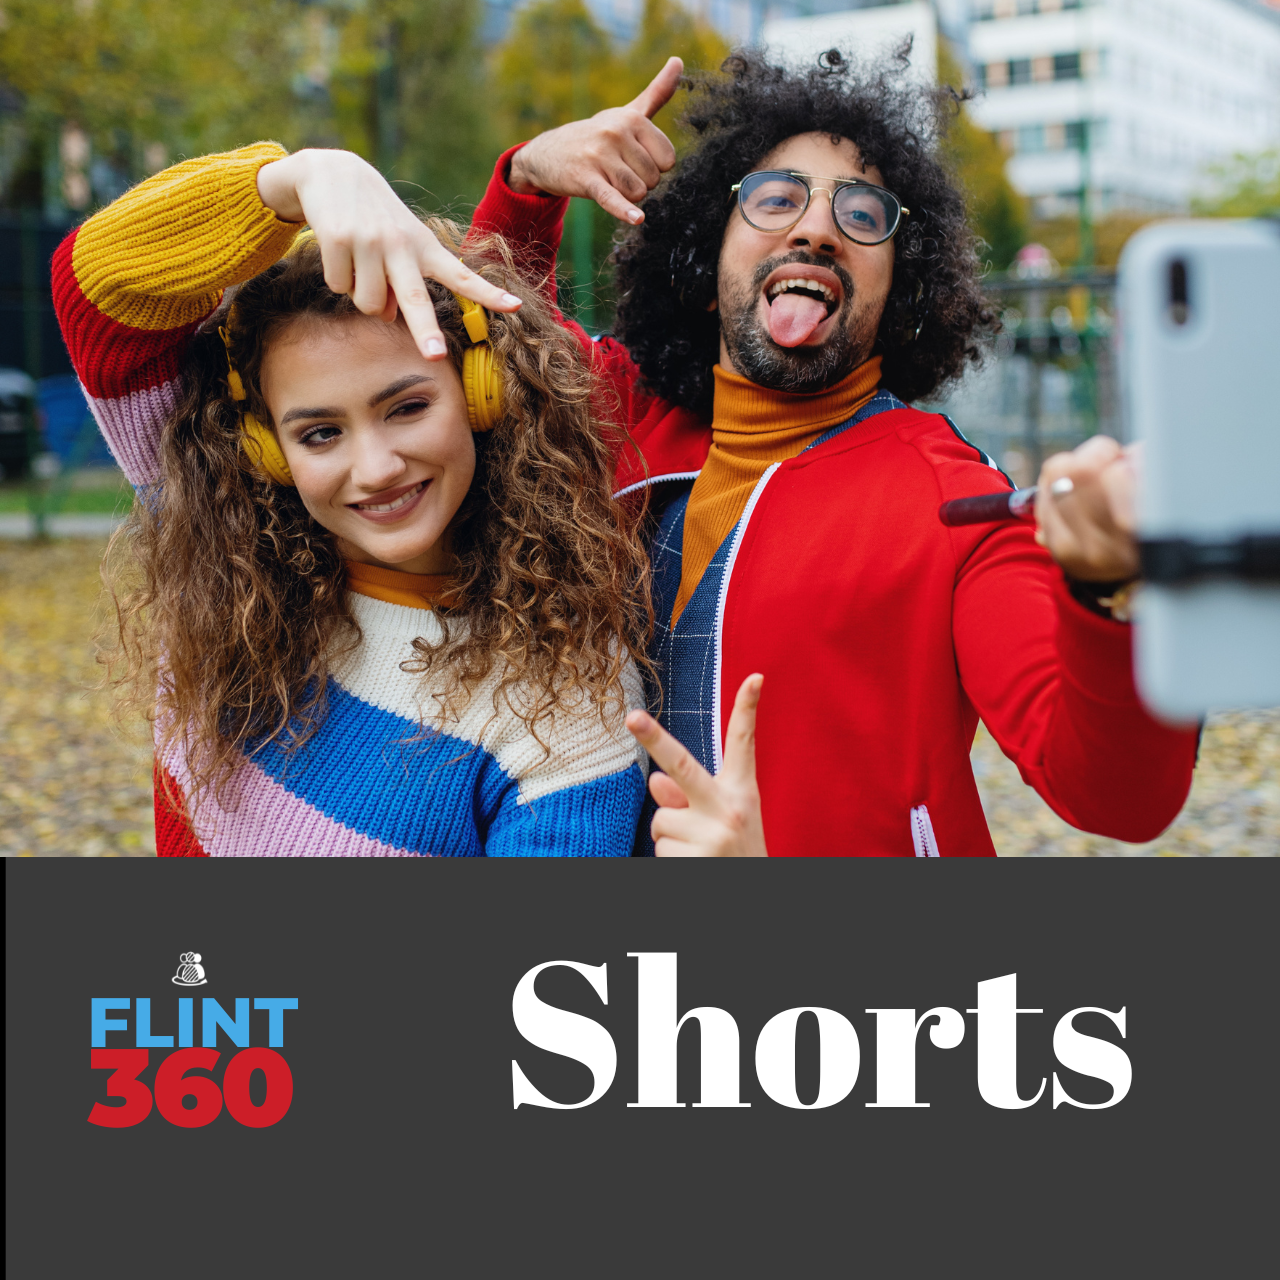 Flint360 Shorts